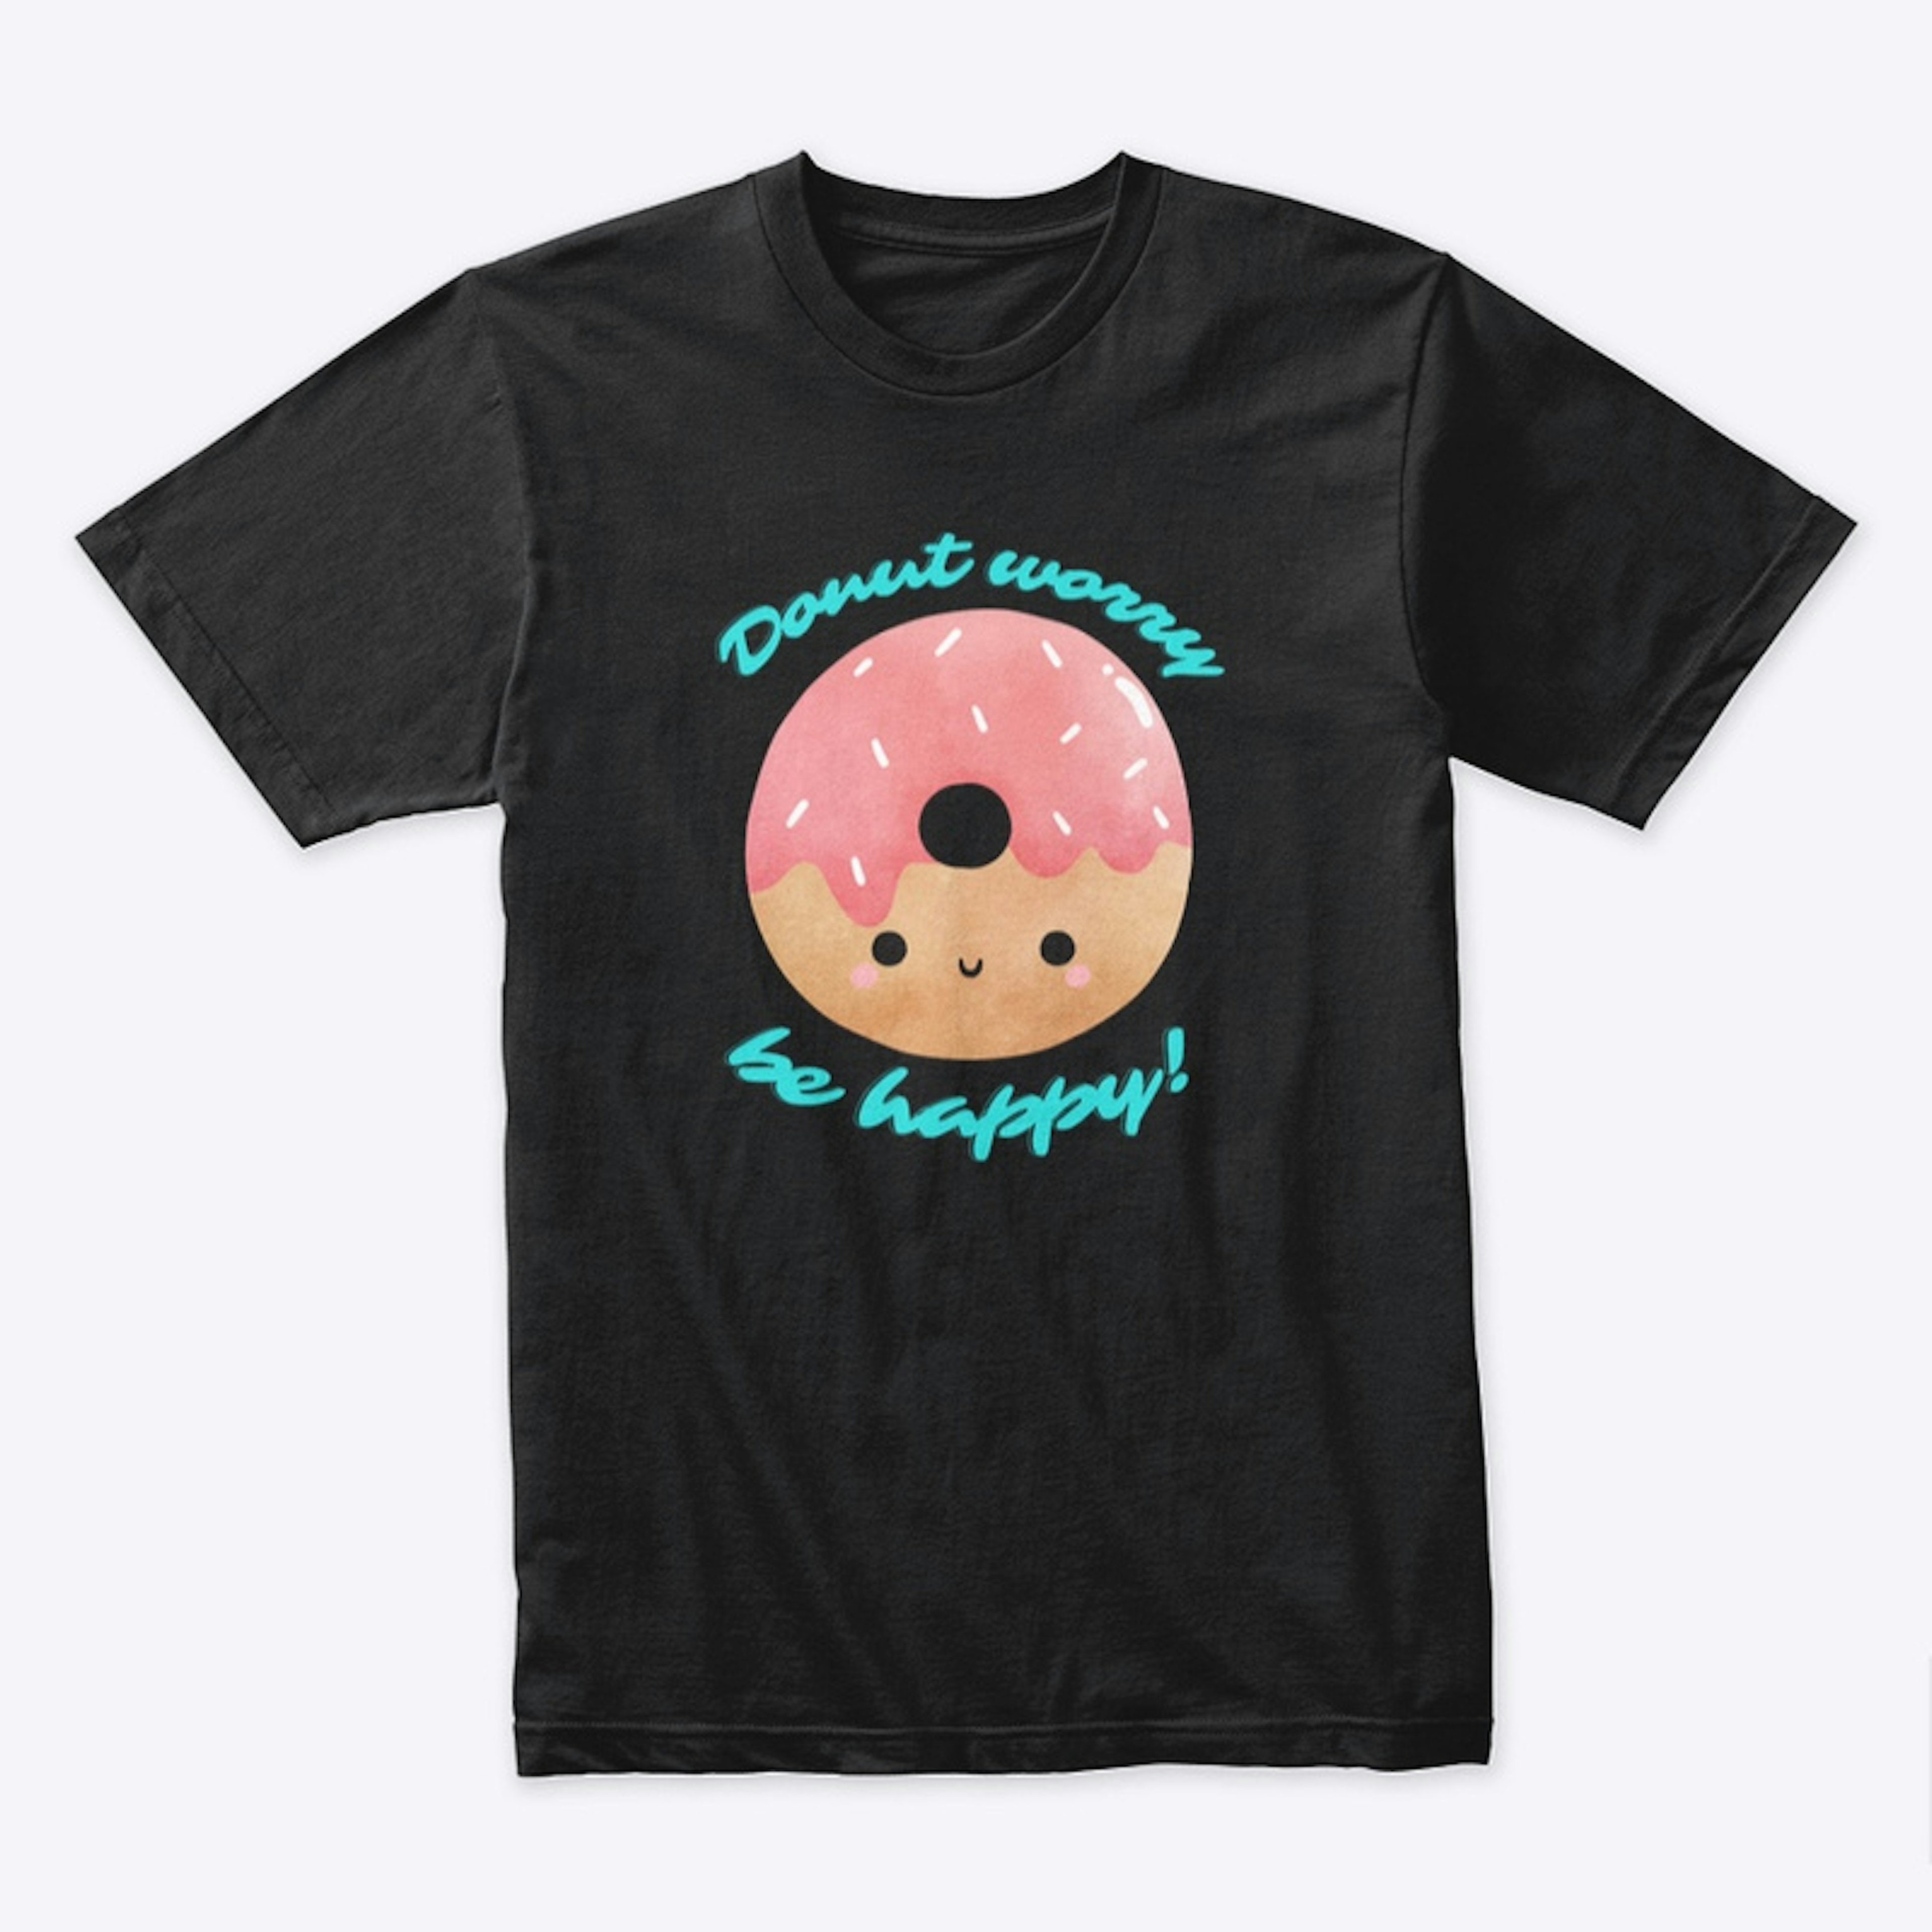 Donut worry be happy v2